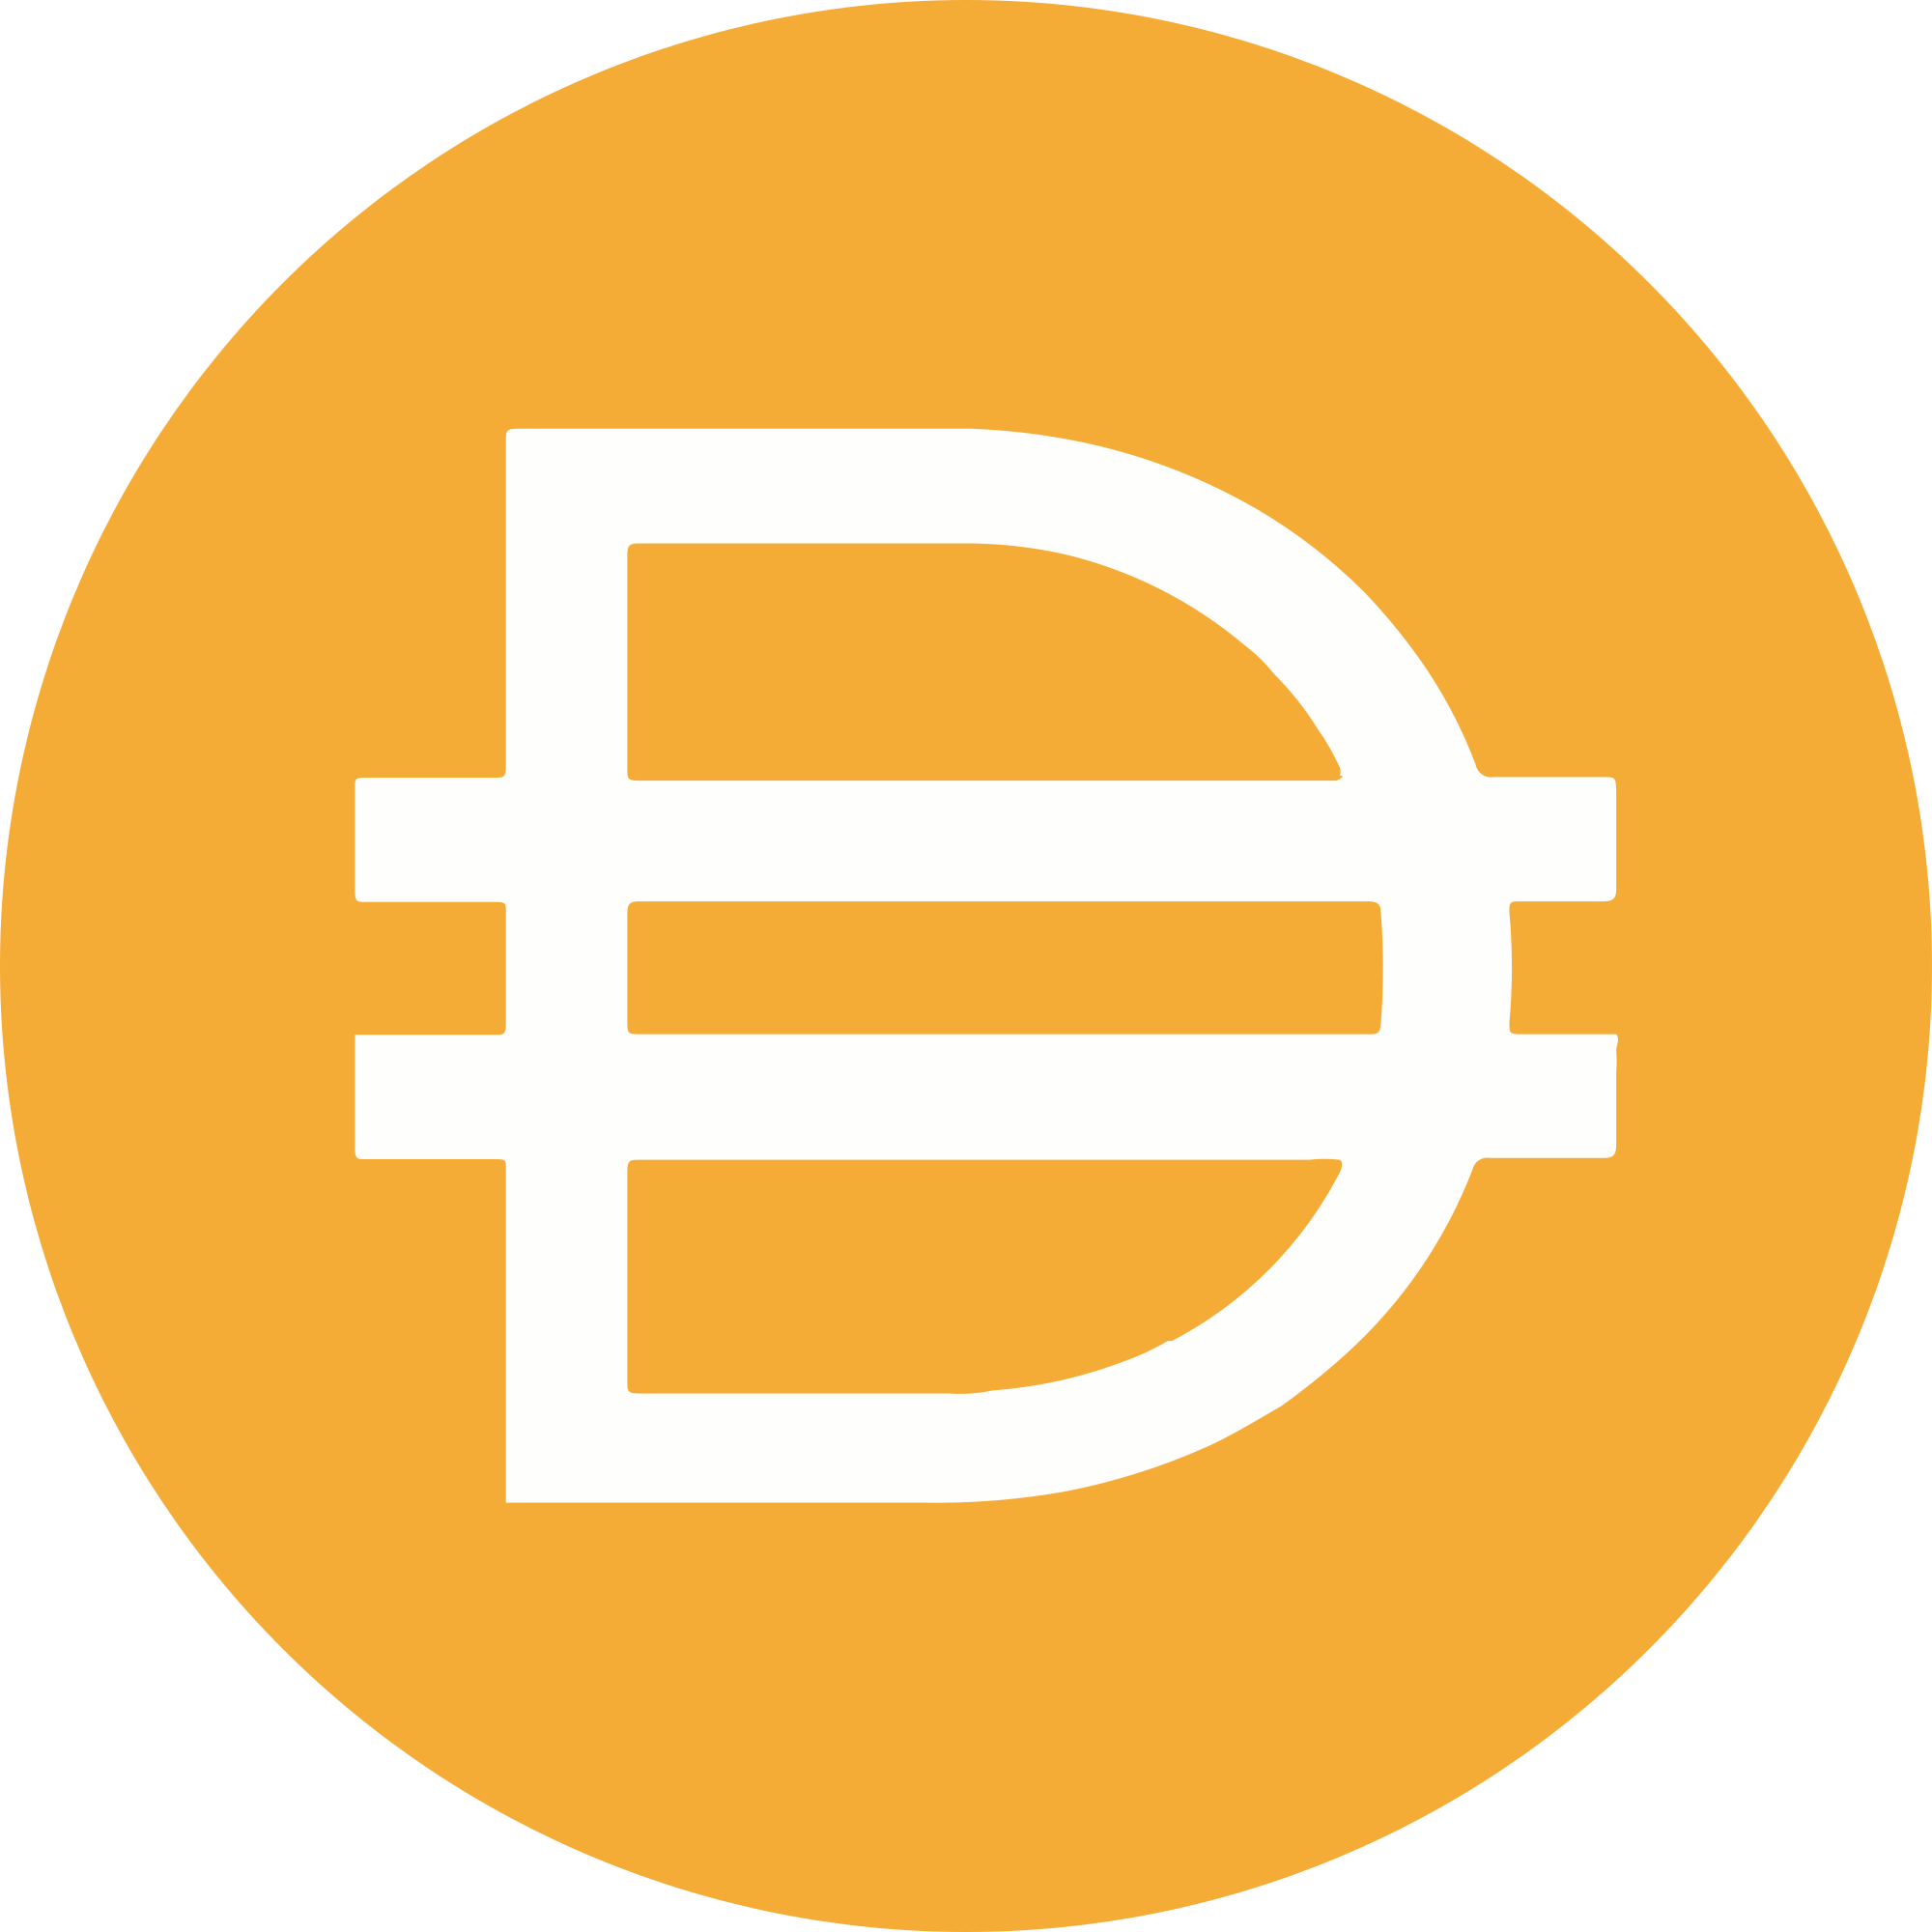 Dai Crypto Logo PNG Image HD